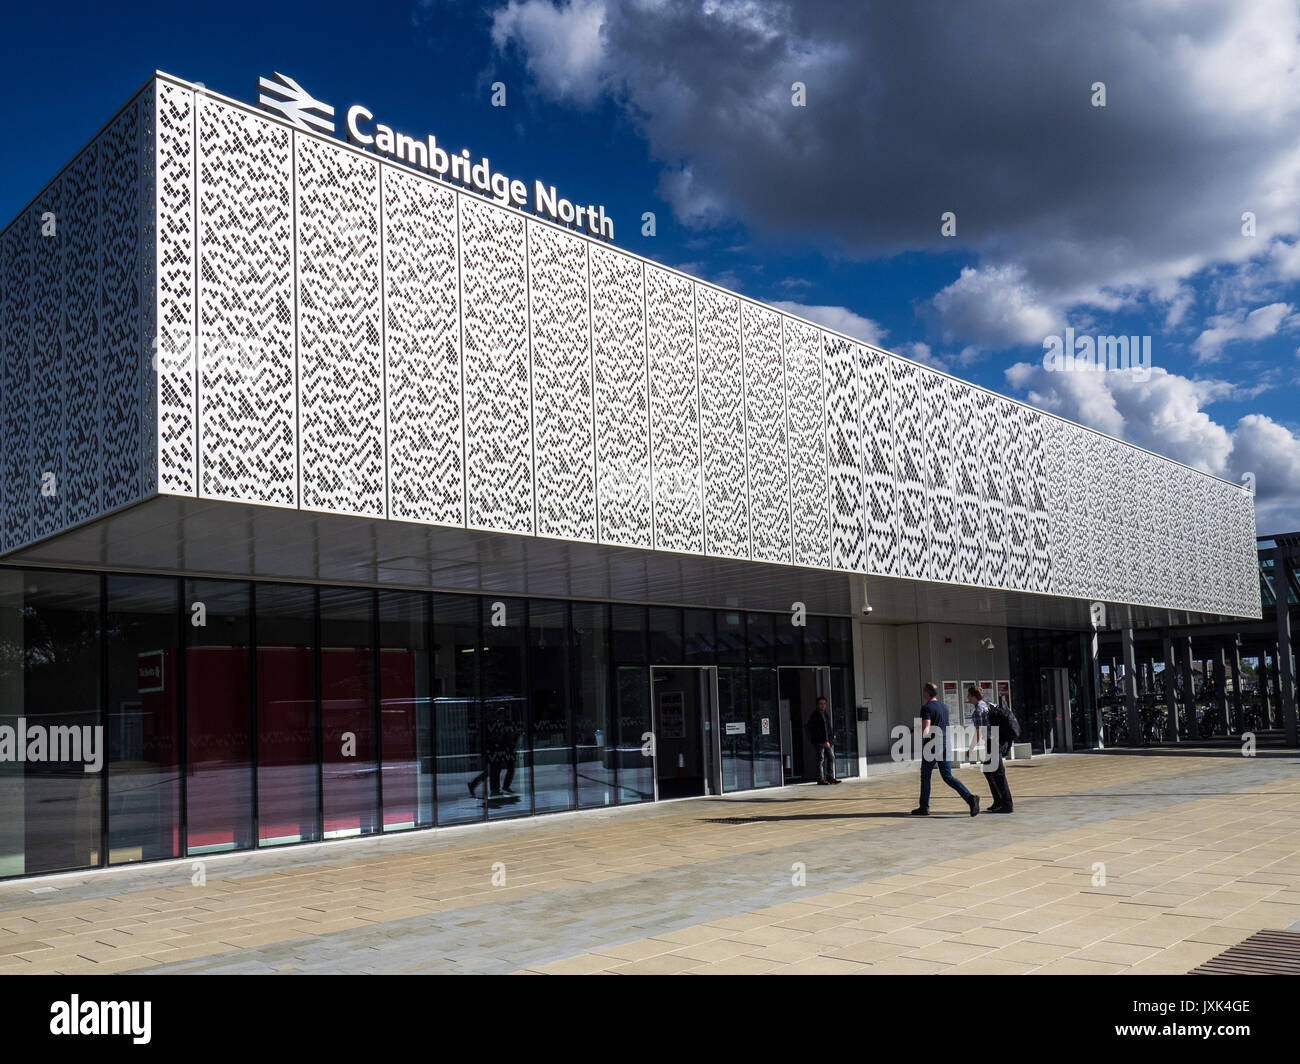 La gare du nord de Cambridge - ouvert 2017 desservant Cambridge et le parc scientifique. Conception basée sur Conway's Game of Life. Architectes Atkins. Banque D'Images